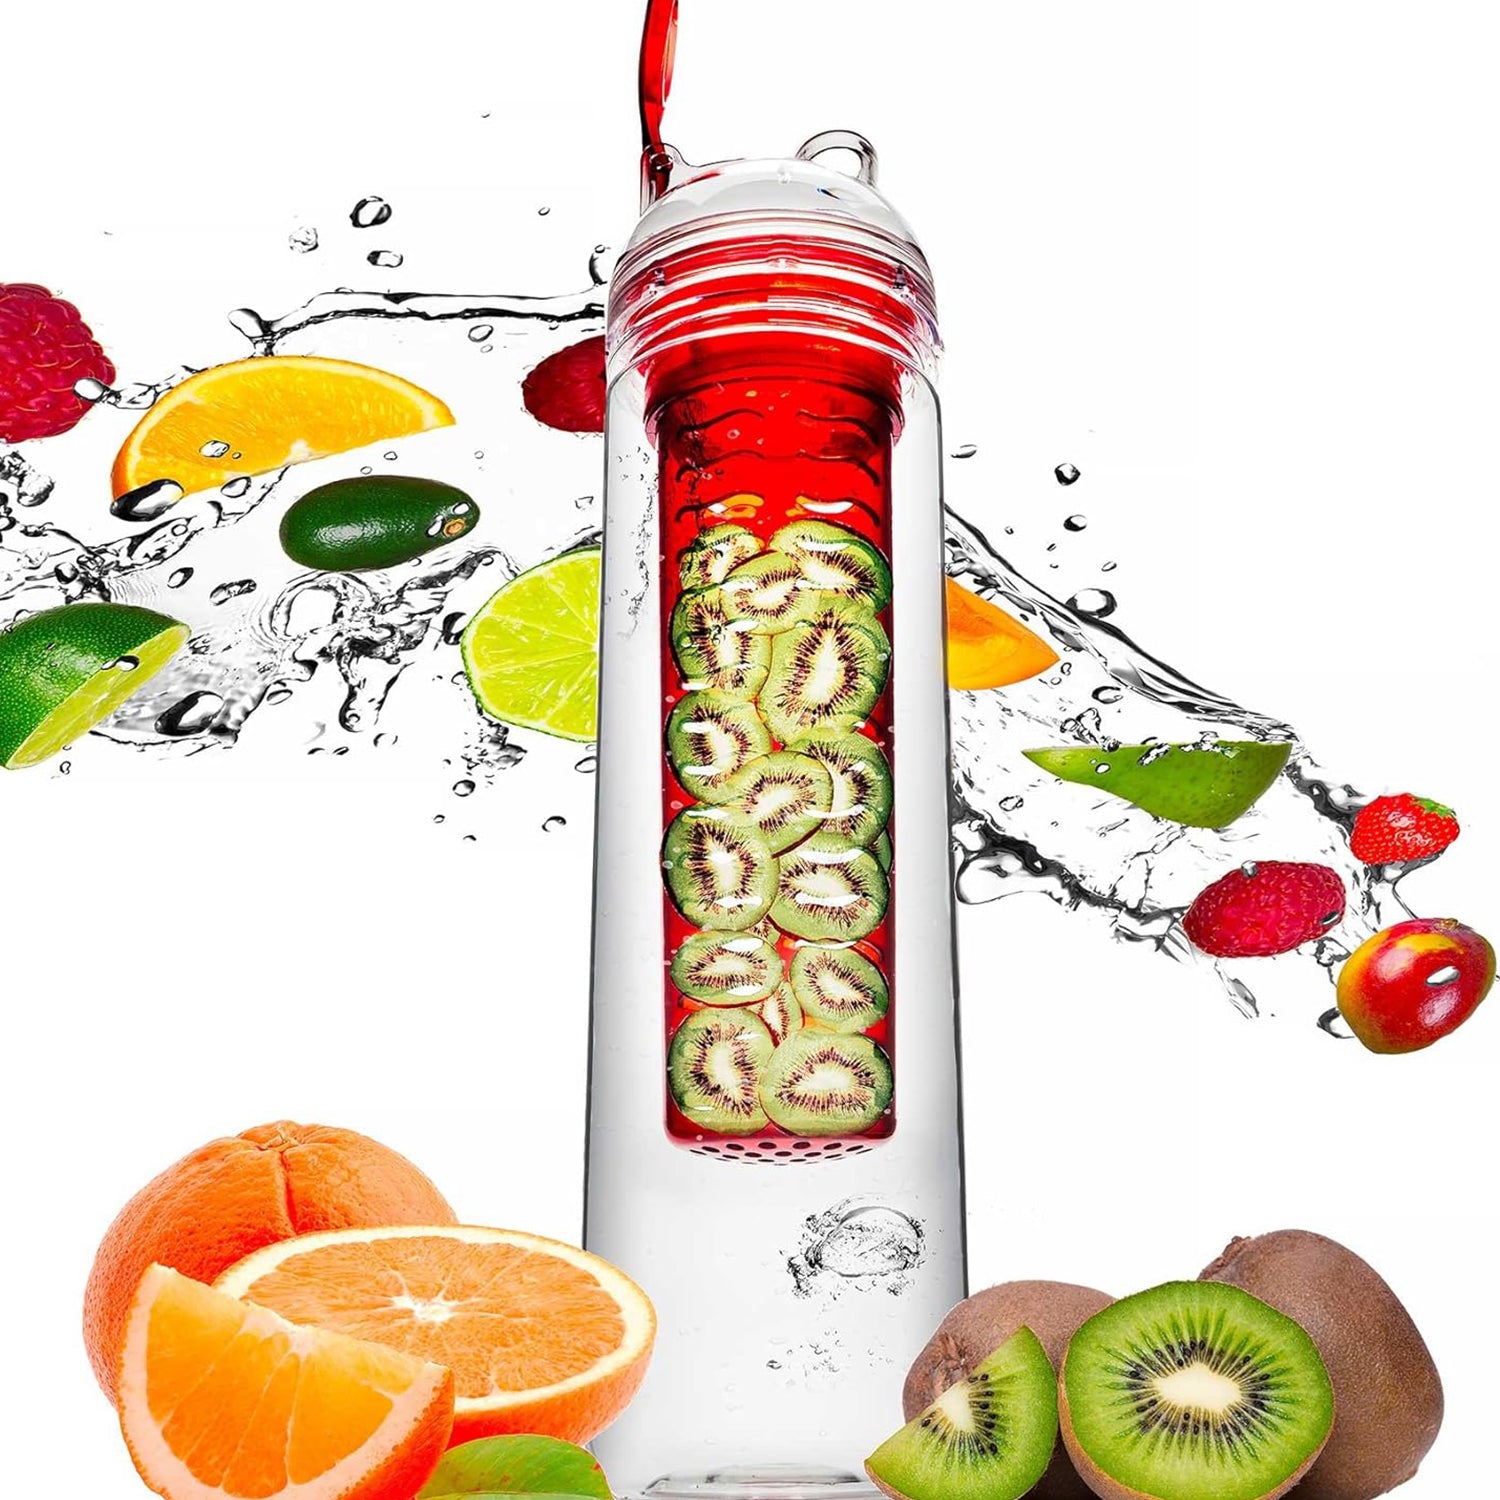 Trinkflasche mit Früchtebhälter Fruchteinsatz - 800 ml - Rot